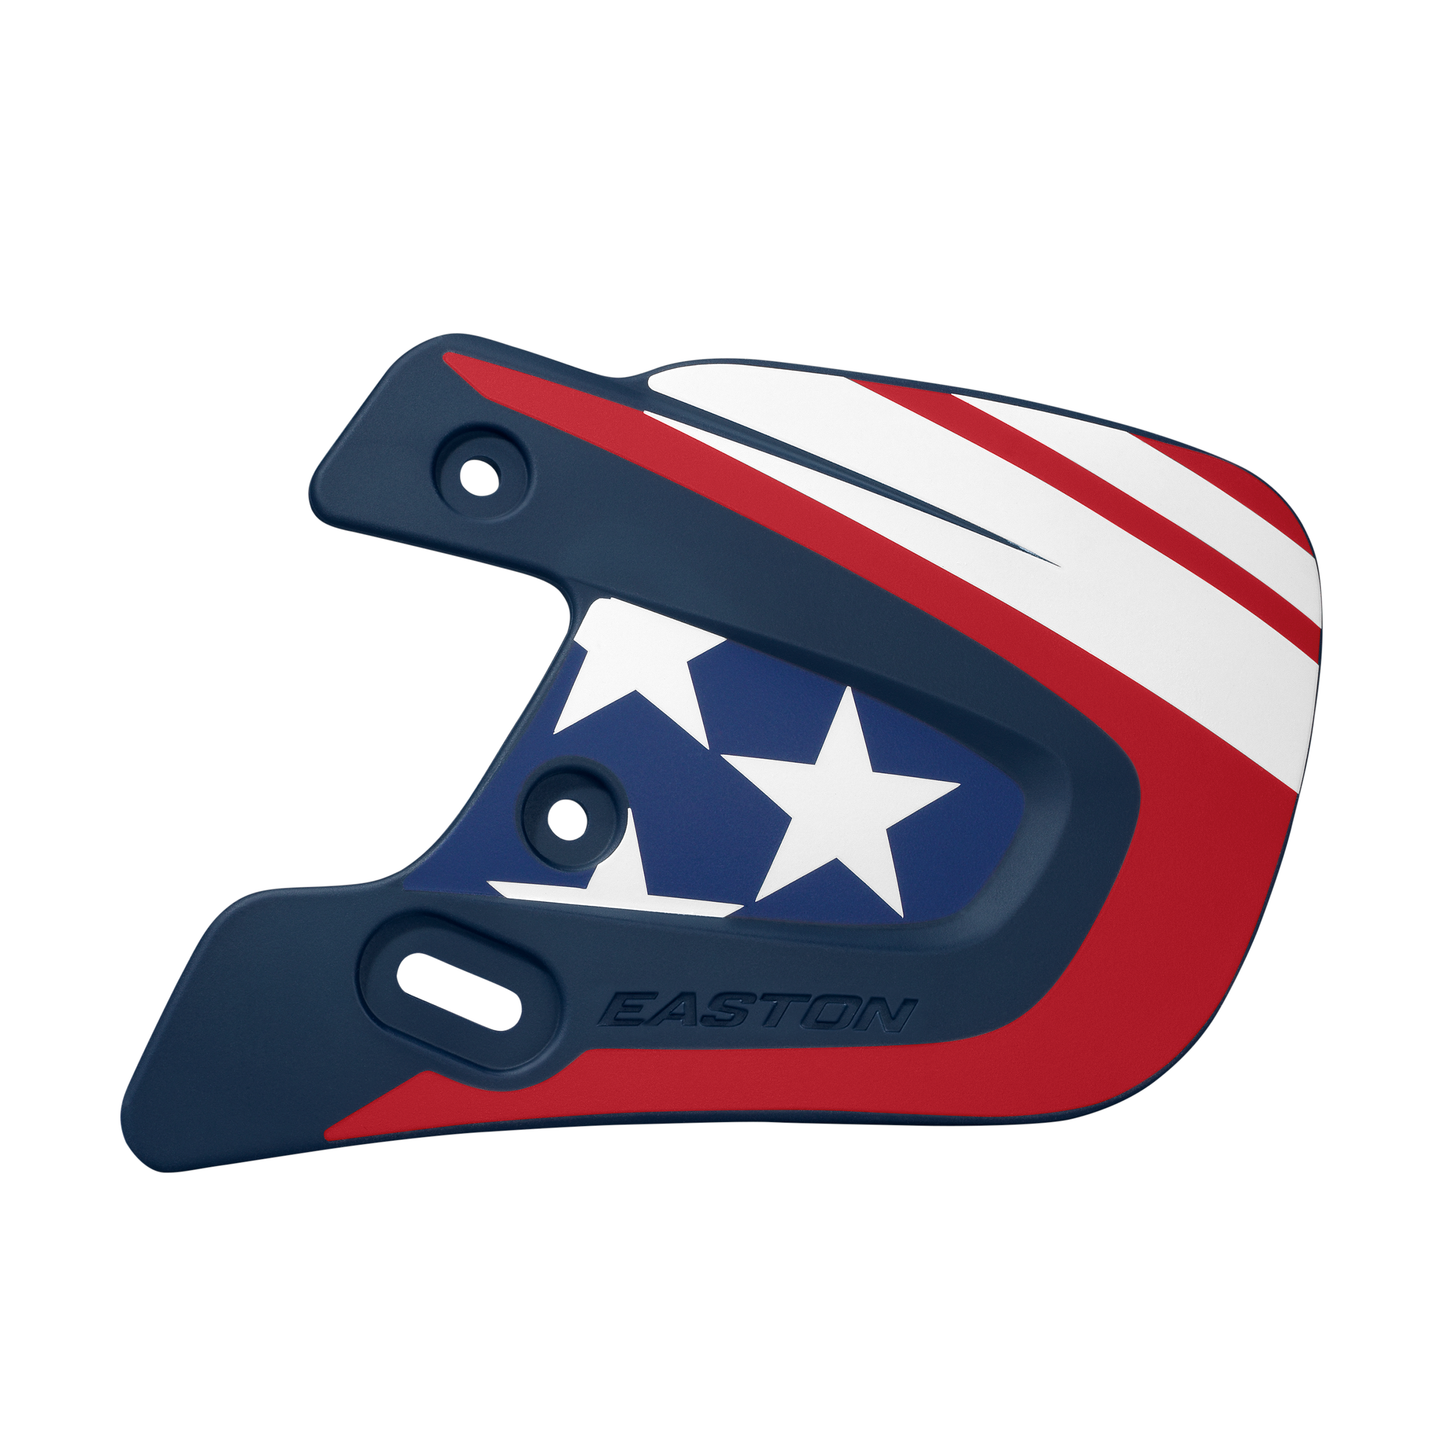 Easton Baseball Helmet Extended Jaw Guard